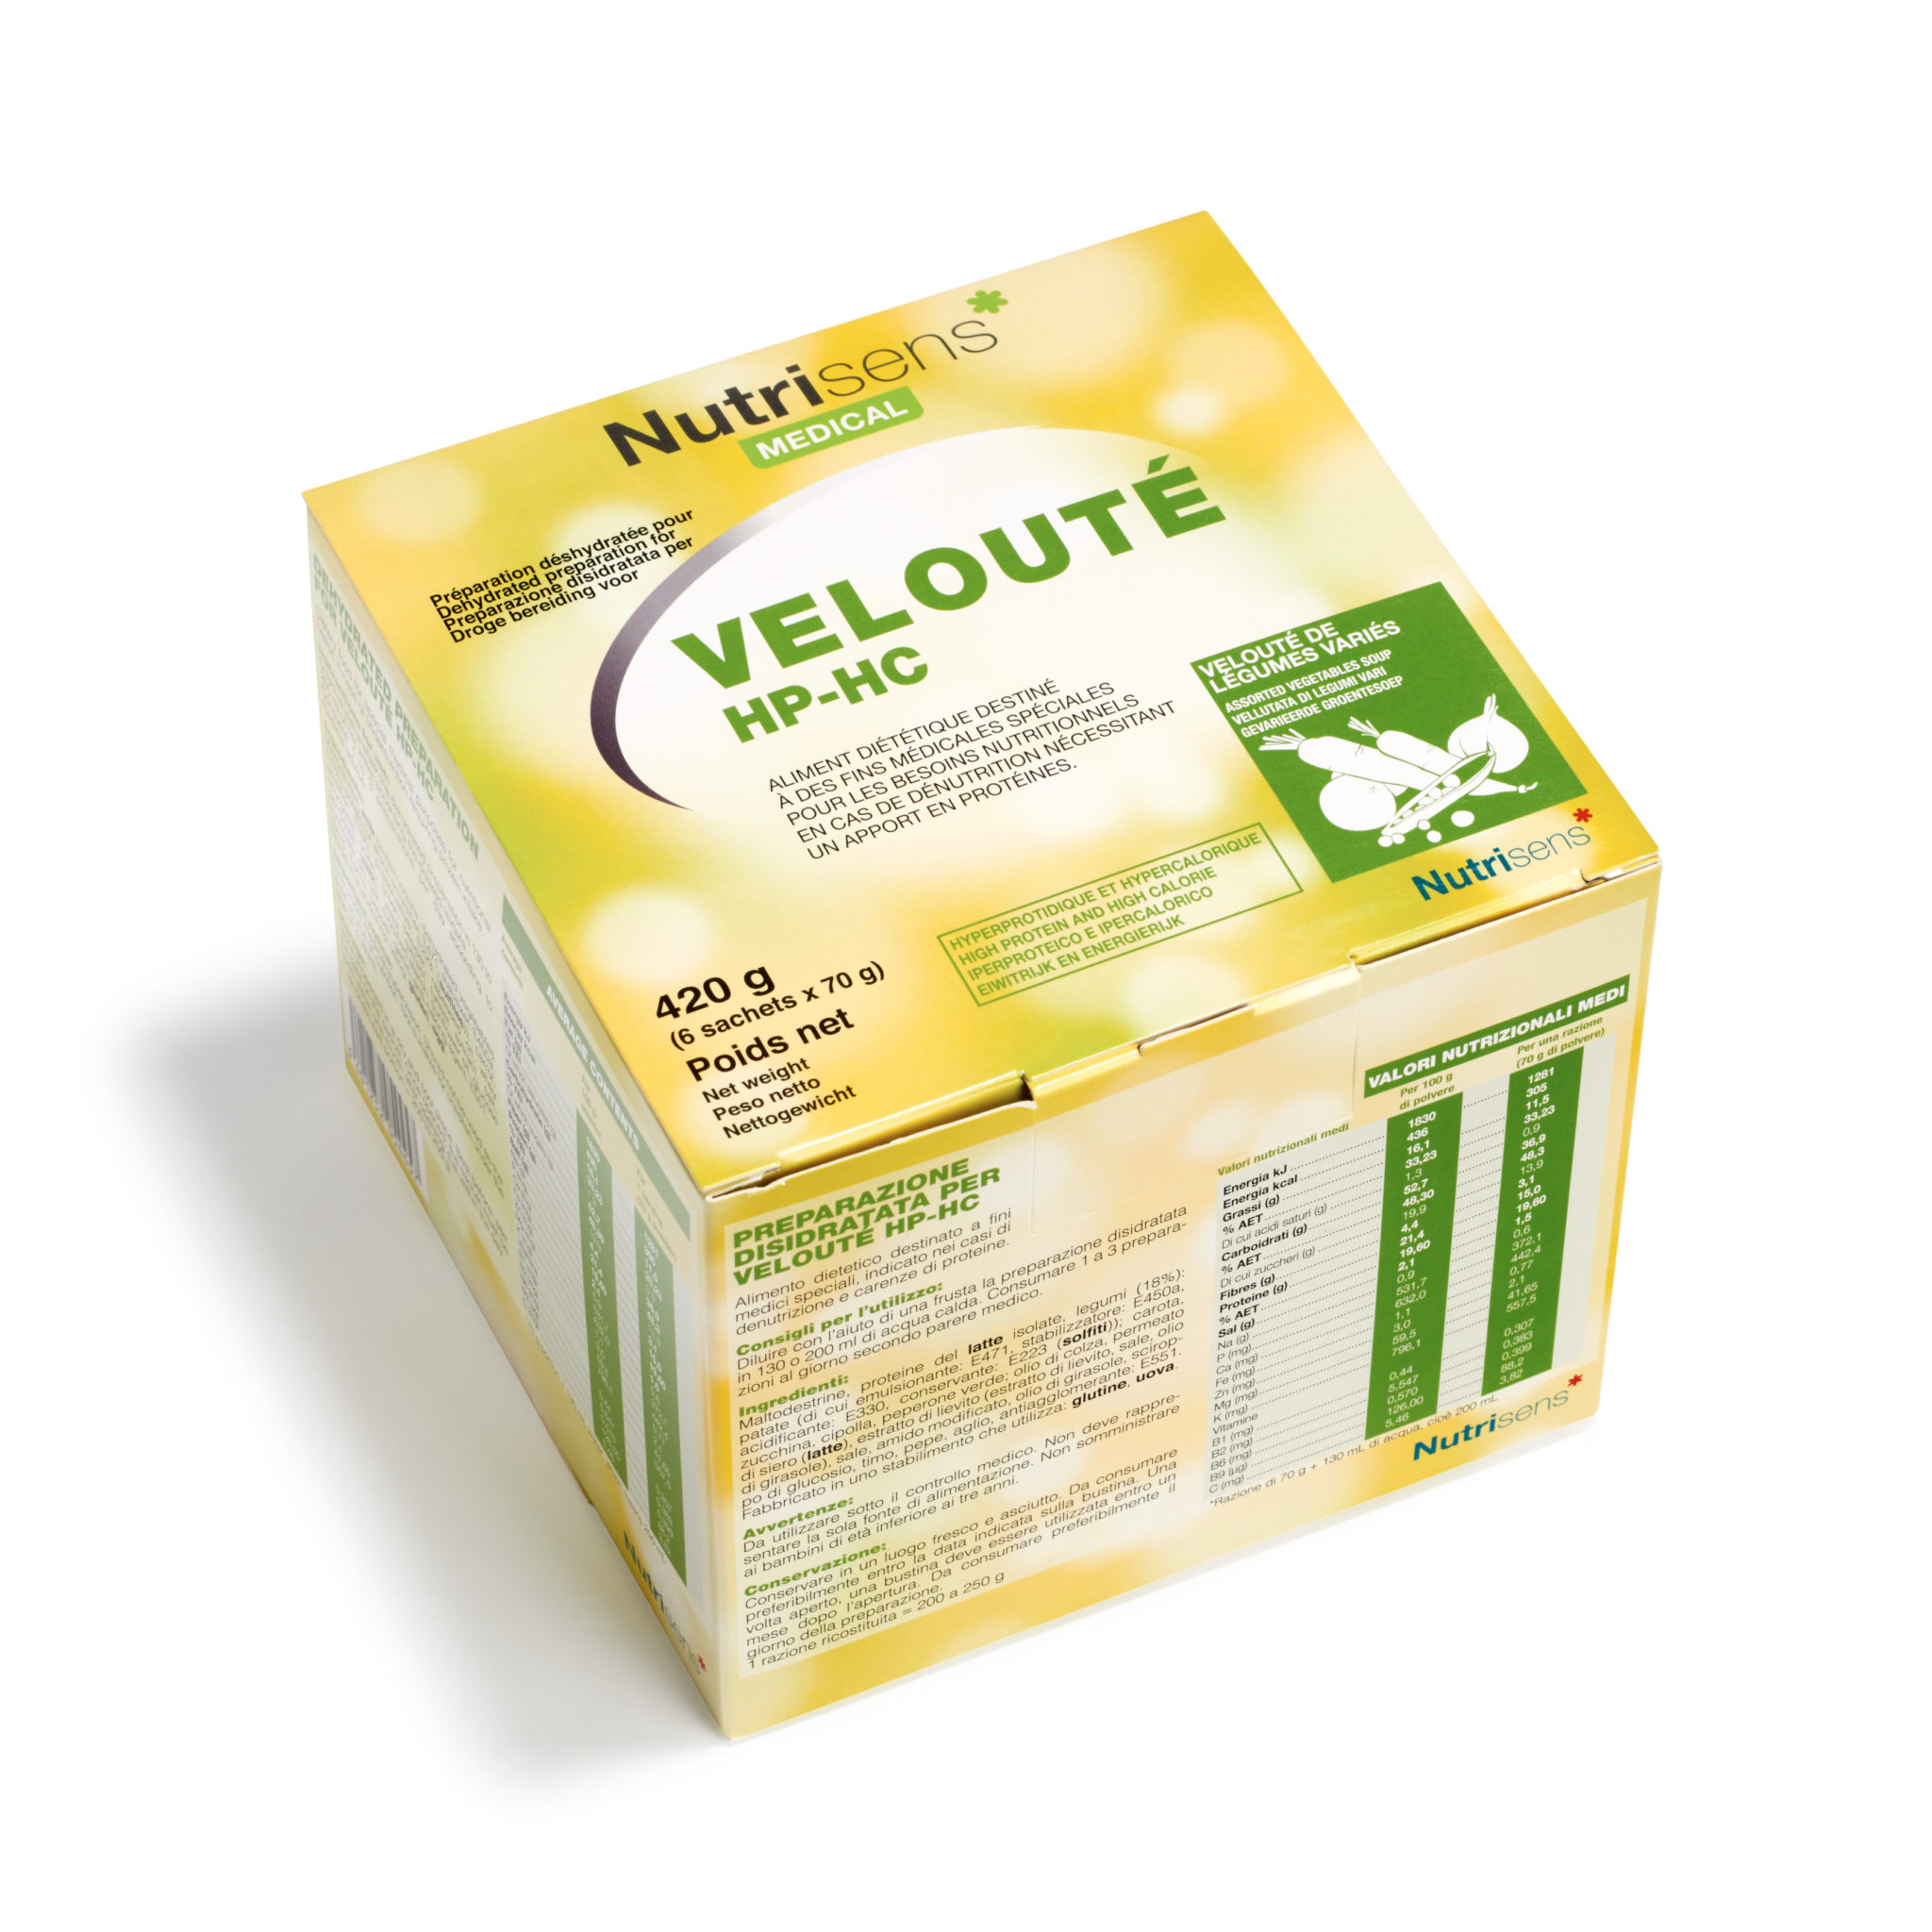 Veloute-legumes-varies